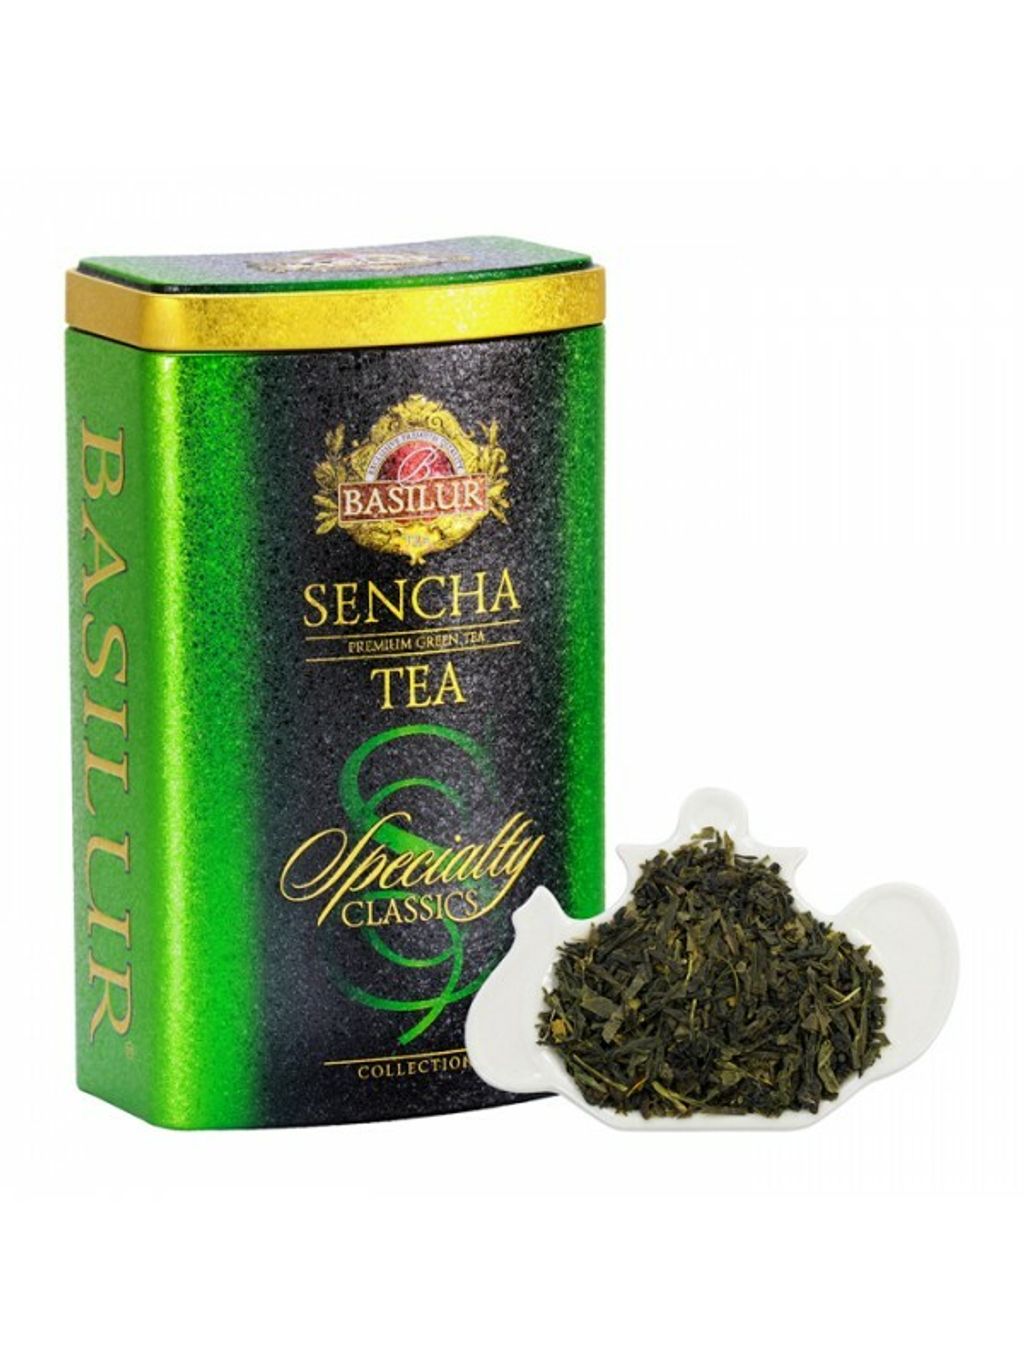 Sencha Green tea.jpeg